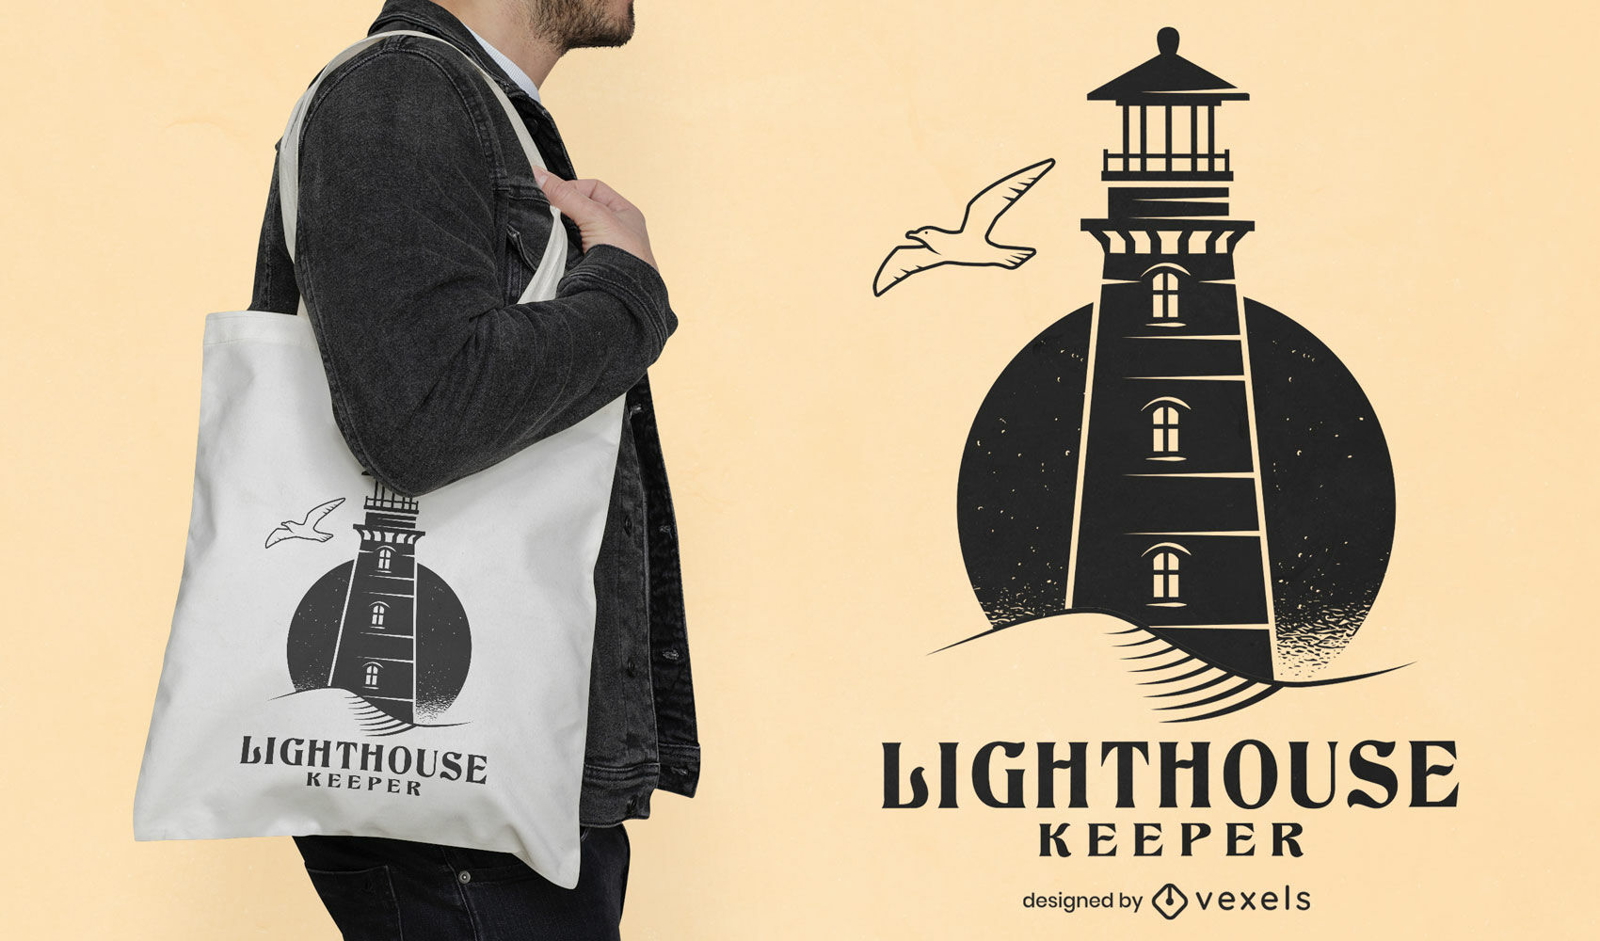 Lighthouse keeper tote bag design